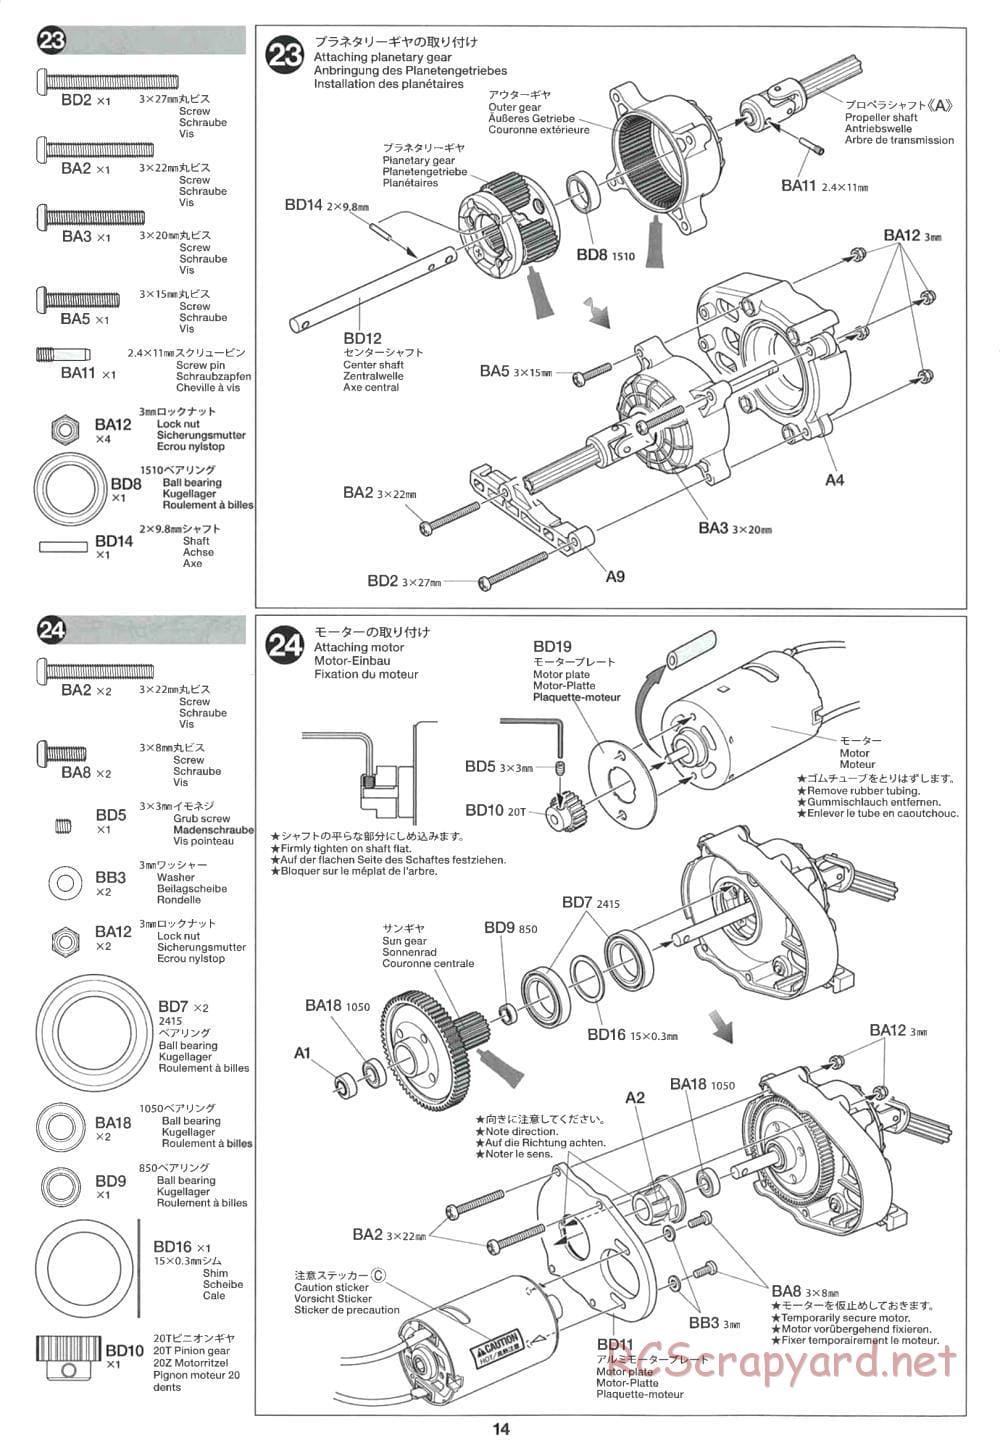 Tamiya - CR-01 Chassis - Manual - Page 14